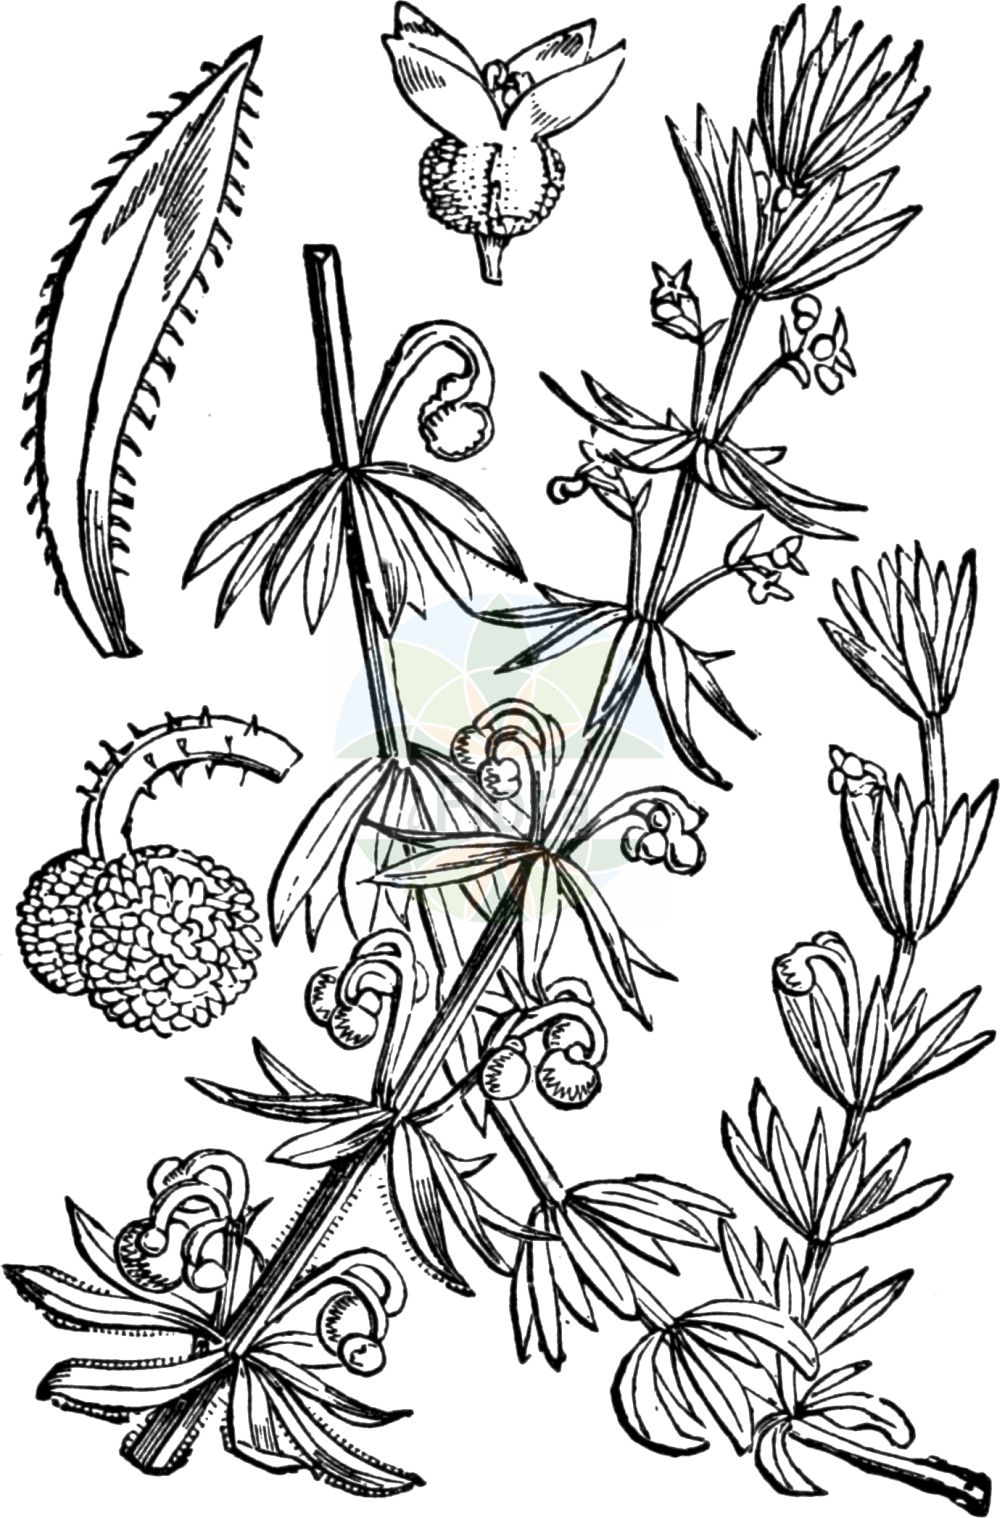 Historische Abbildung von Galium tricornutum (Dreihörniges Labkraut - Corn Cleavers). Das Bild zeigt Blatt, Bluete, Frucht und Same. ---- Historical Drawing of Galium tricornutum (Dreihörniges Labkraut - Corn Cleavers). The image is showing leaf, flower, fruit and seed.(Galium tricornutum,Dreihörniges Labkraut,Corn Cleavers,Galium tricorne,Galium tricornutum,Dreihoerniges Labkraut,Corn Cleavers,Roughfruit Corn Bedstraw,Rough Corn Bedstraw,Rough Corn Cleavers,Small Goosegrass,Three-horn Bedstraw,Galium,Labkraut,Bedstraw,Rubiaceae,Rötegewächse,Bedstraw family,Blatt,Bluete,Frucht,Same,leaf,flower,fruit,seed,Fitch et al. (1880))